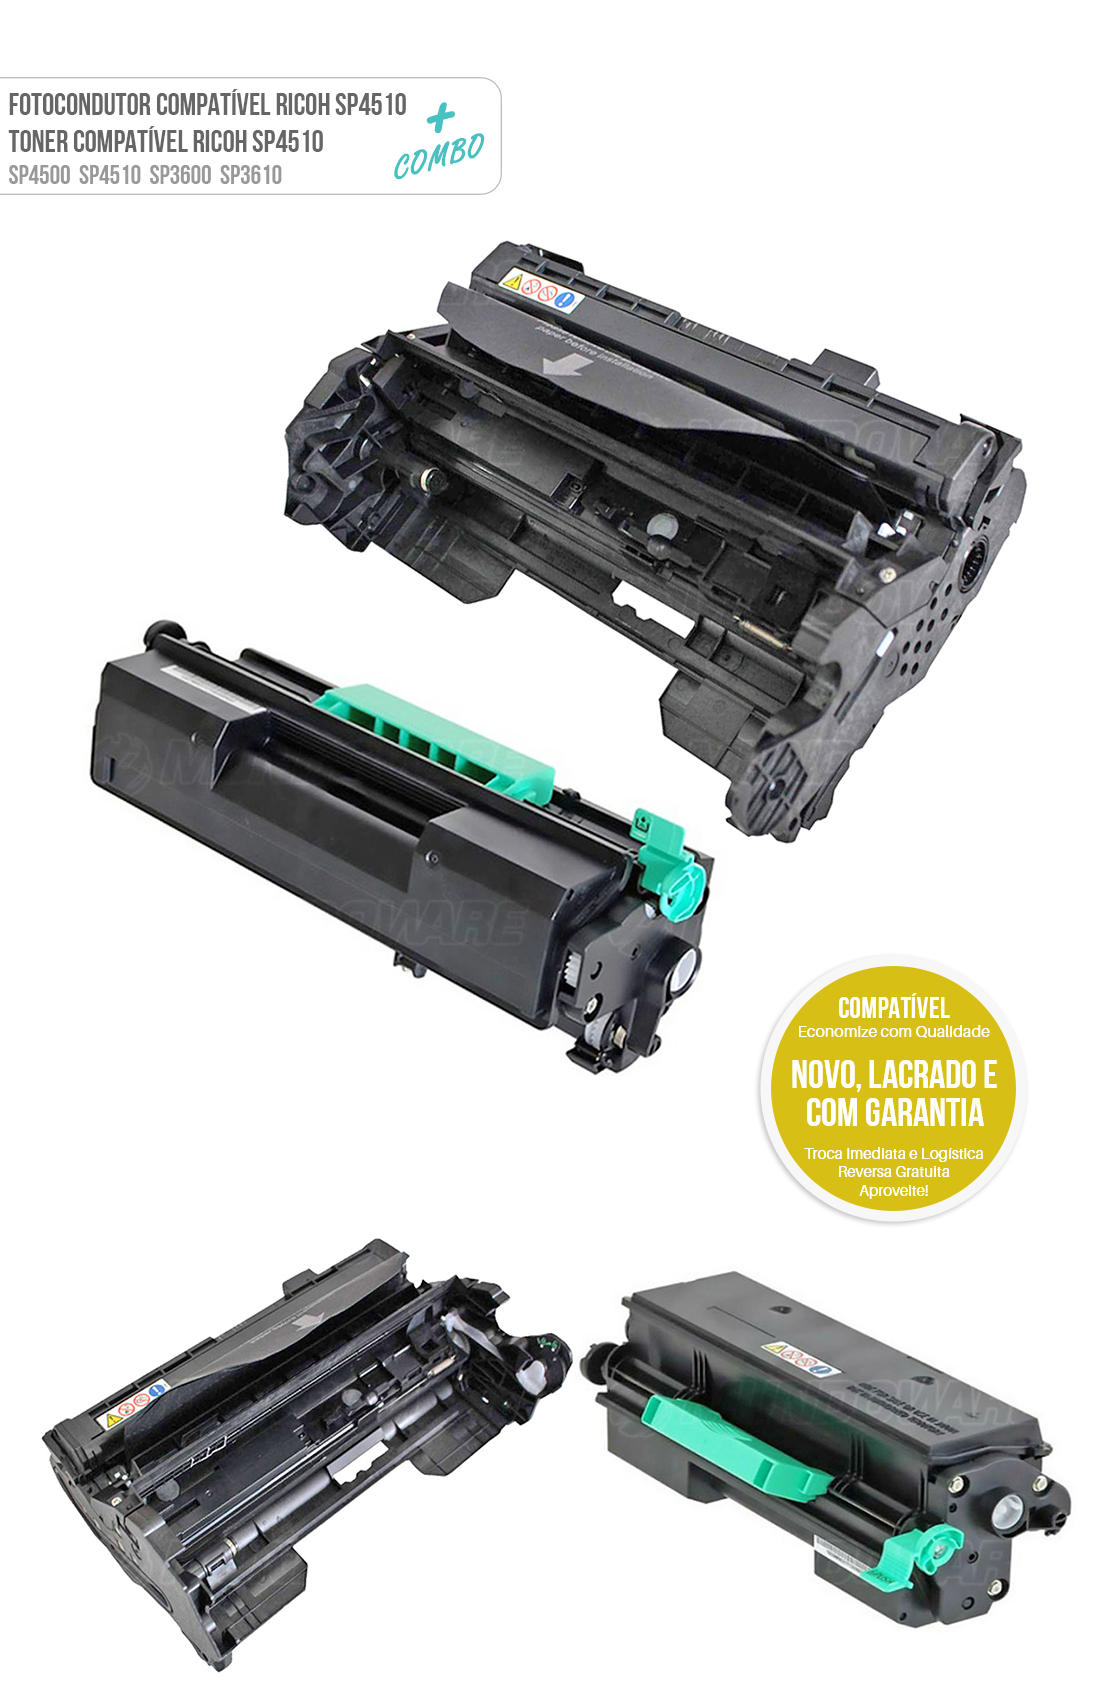 Cartucho de Cilindro + Toner Compatíveis para Impressora SP4500 SP4510 SP4520 SP3600 SP3610